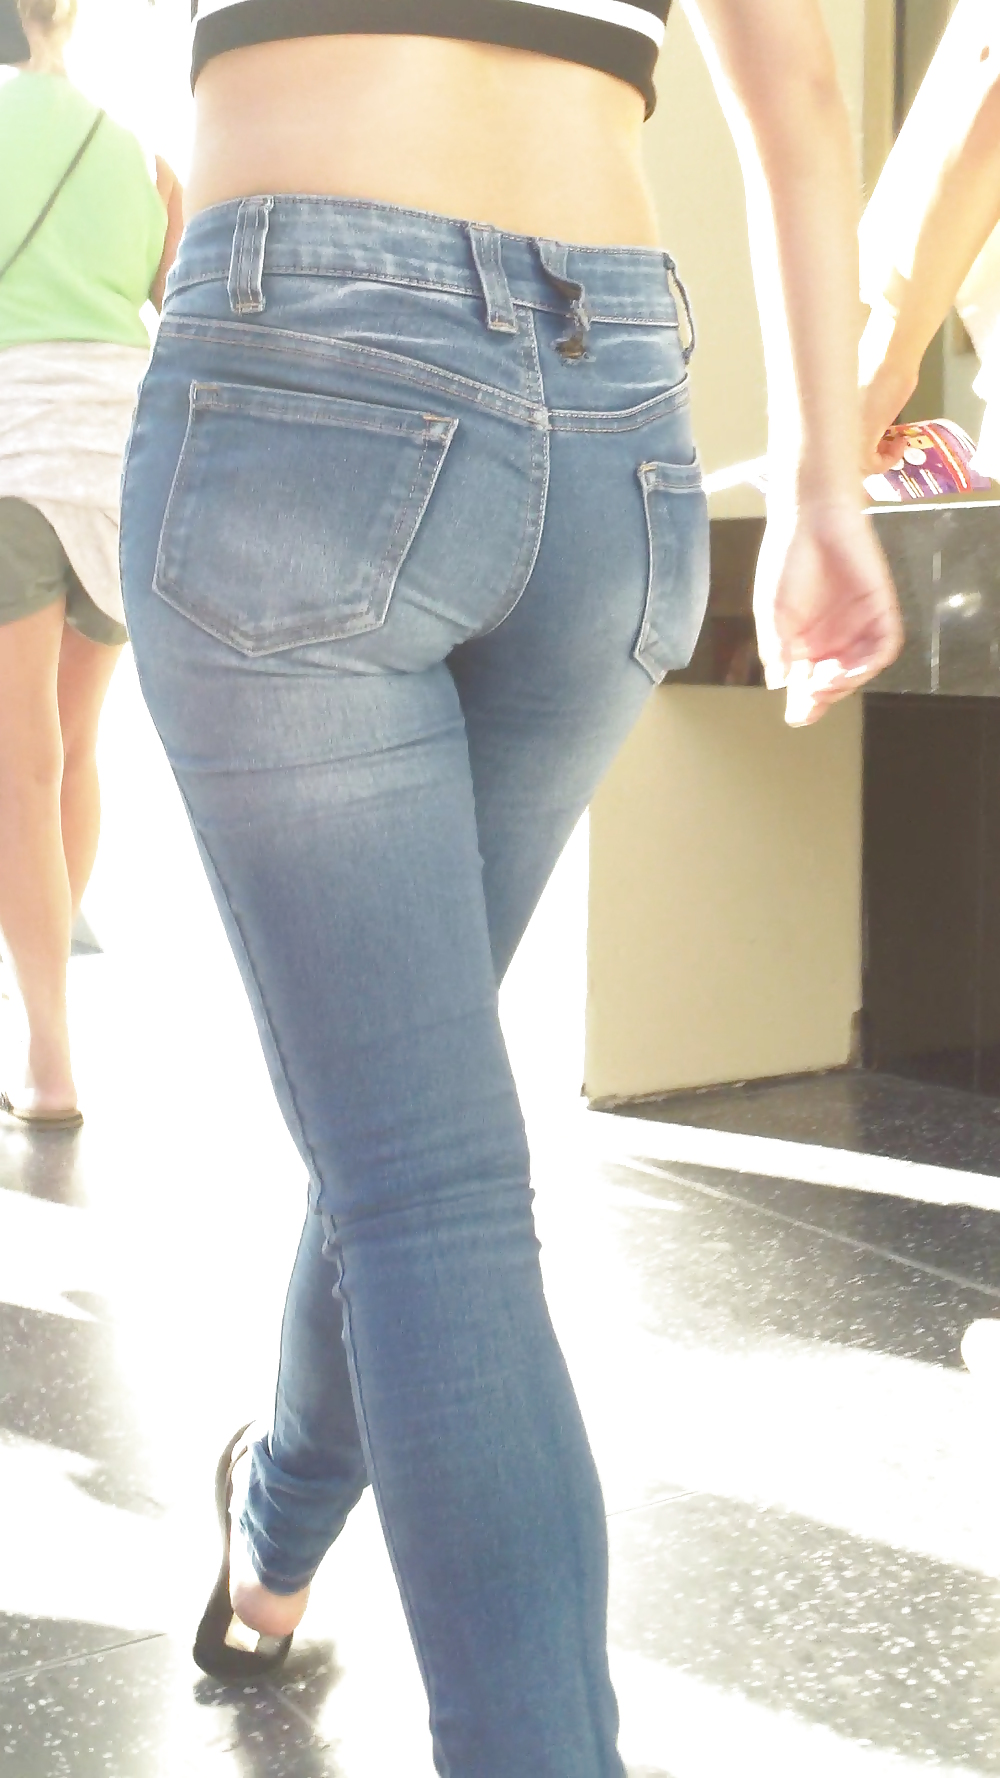 Beautiful cute tight teen ass & butt in blue jeans #21921911